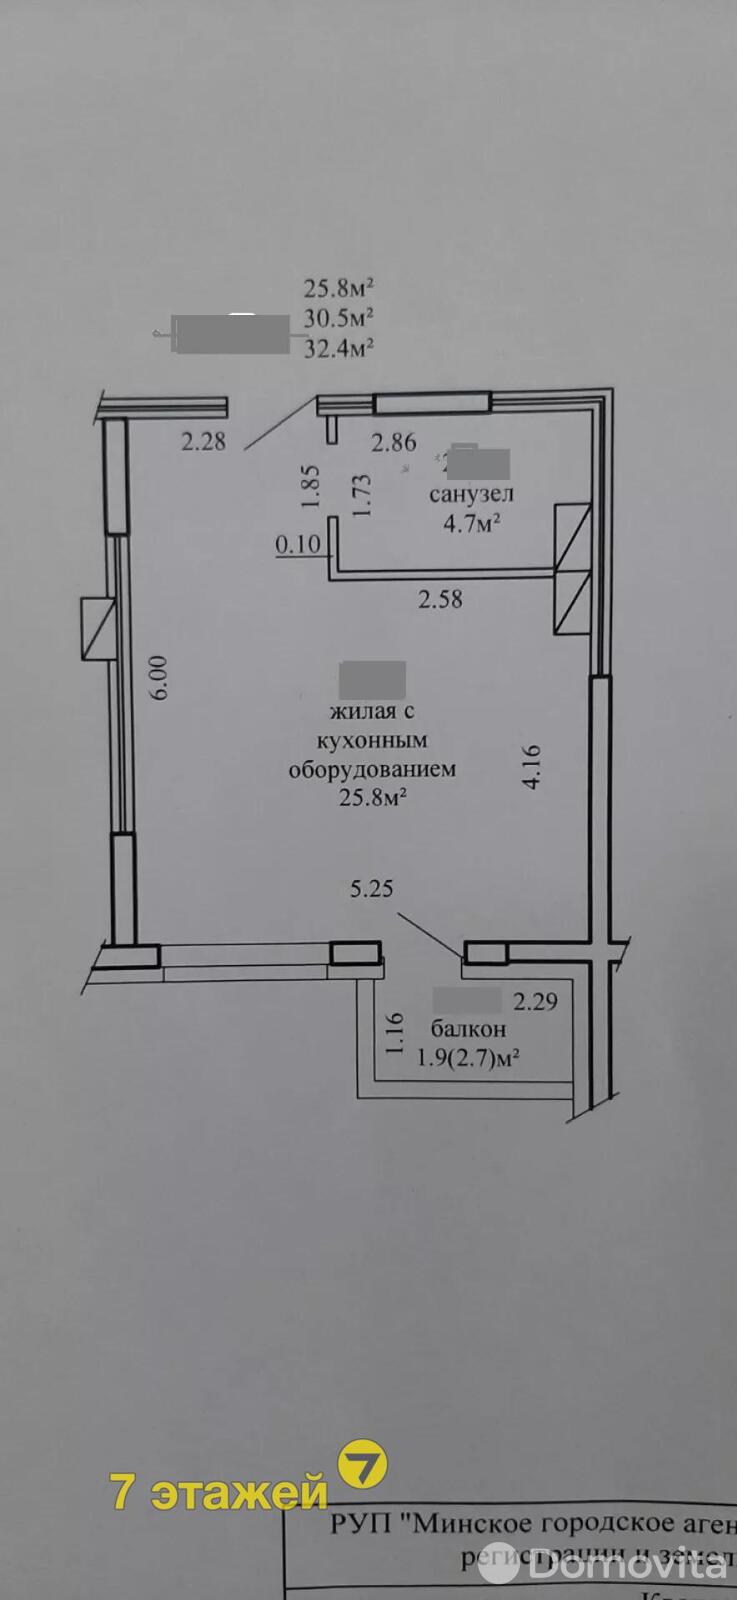 квартира, Минск, ул. Михаила Савицкого, д. 2 на ст. метро Ковальская слобода